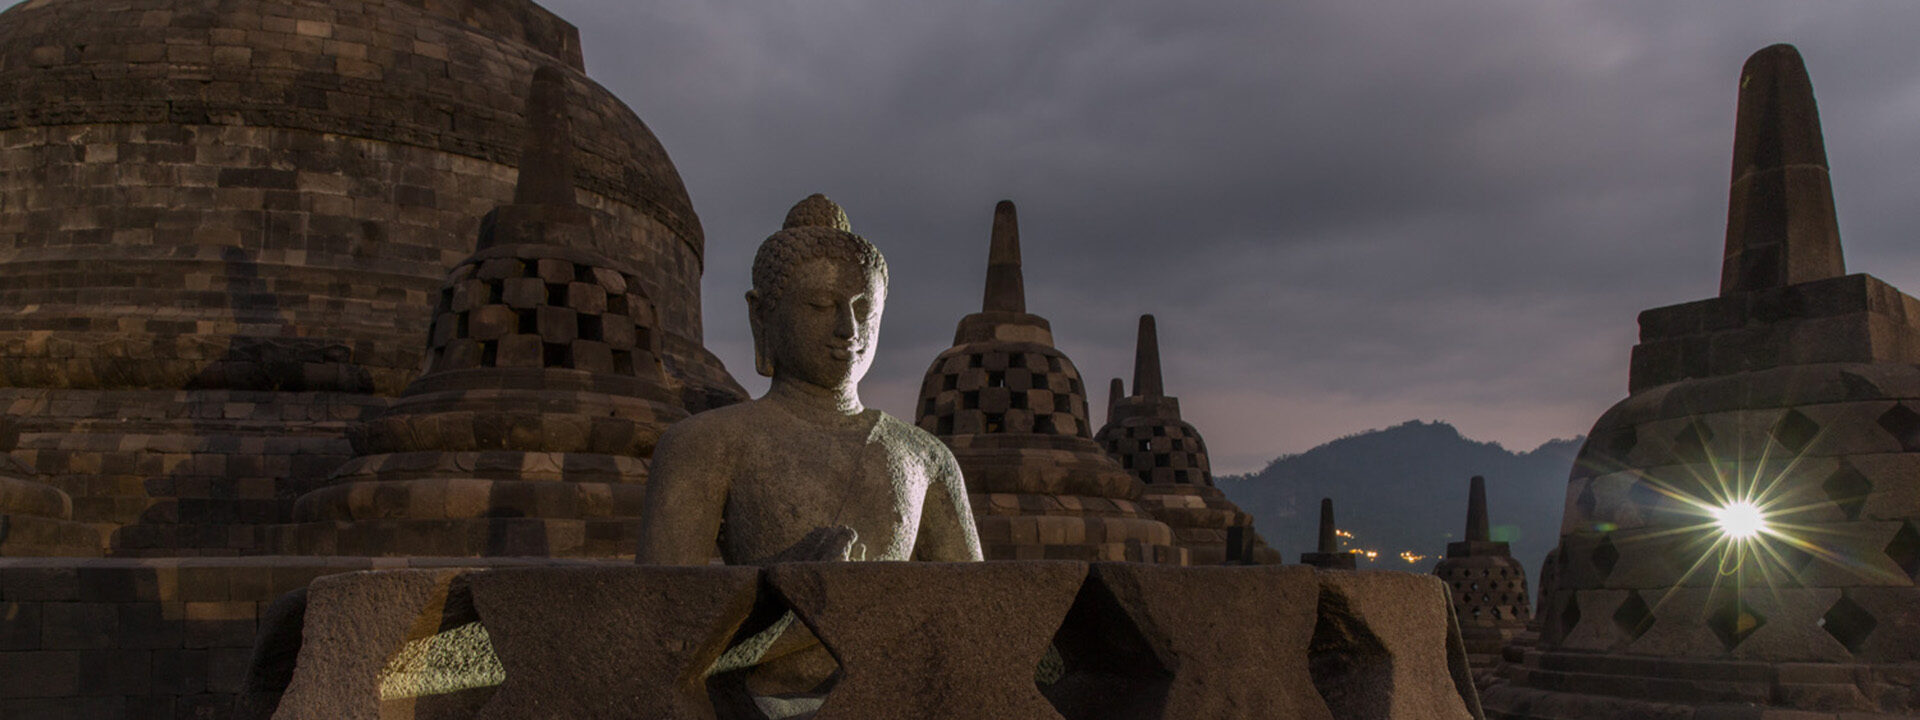 Sliderbild: Buddhas aus Indonesien